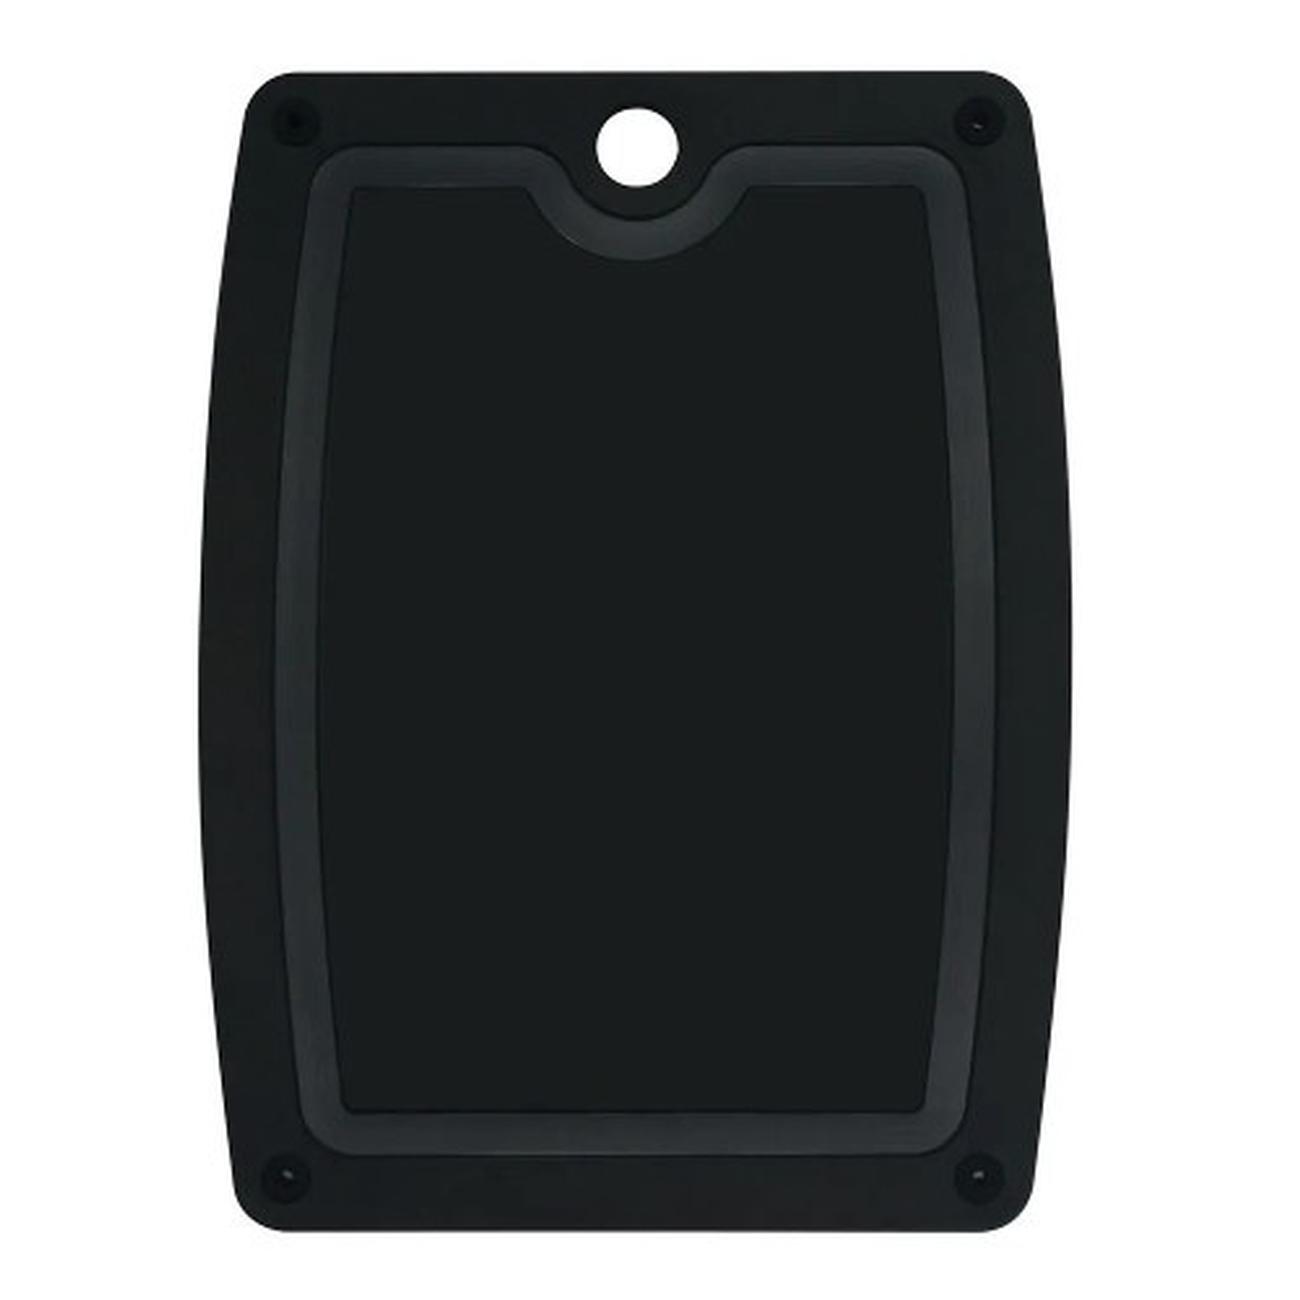 epicurean-double-sided-chopping-board-slate-black-44x32cm - Epicurean Double Sided Cutting Board Slate 44x32cm